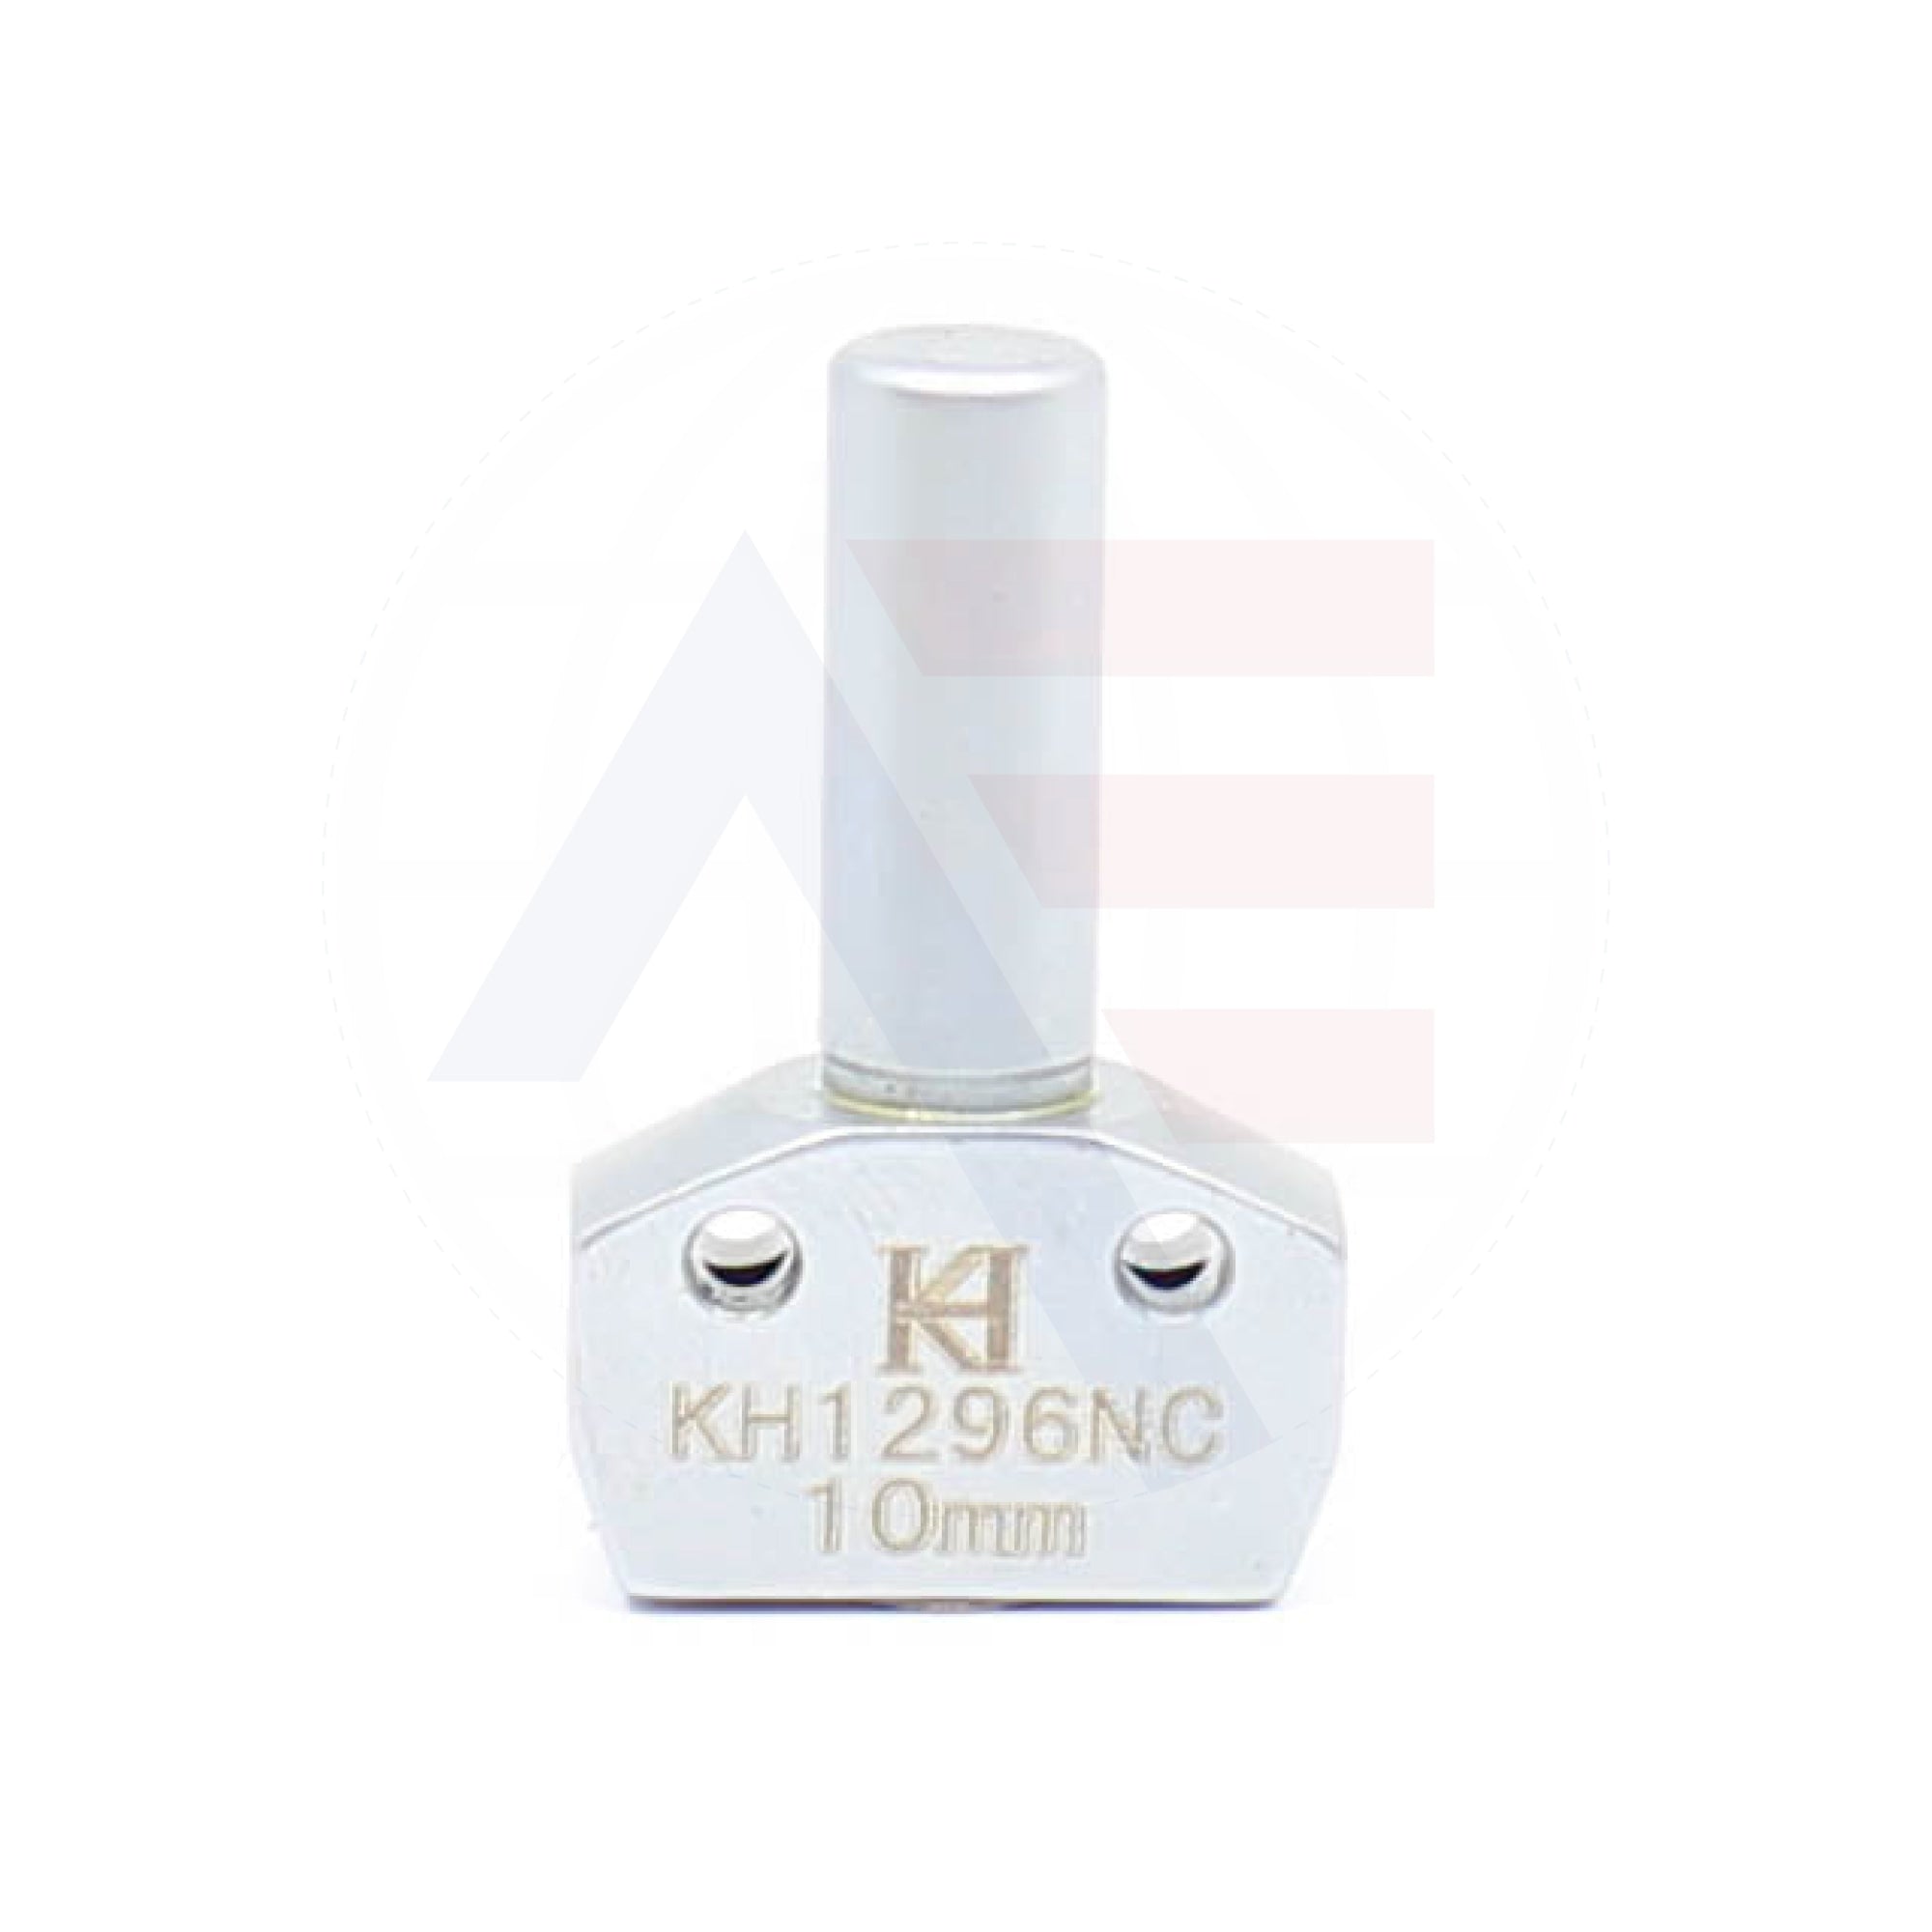 Kh1296Ncx10 Needle Clamp